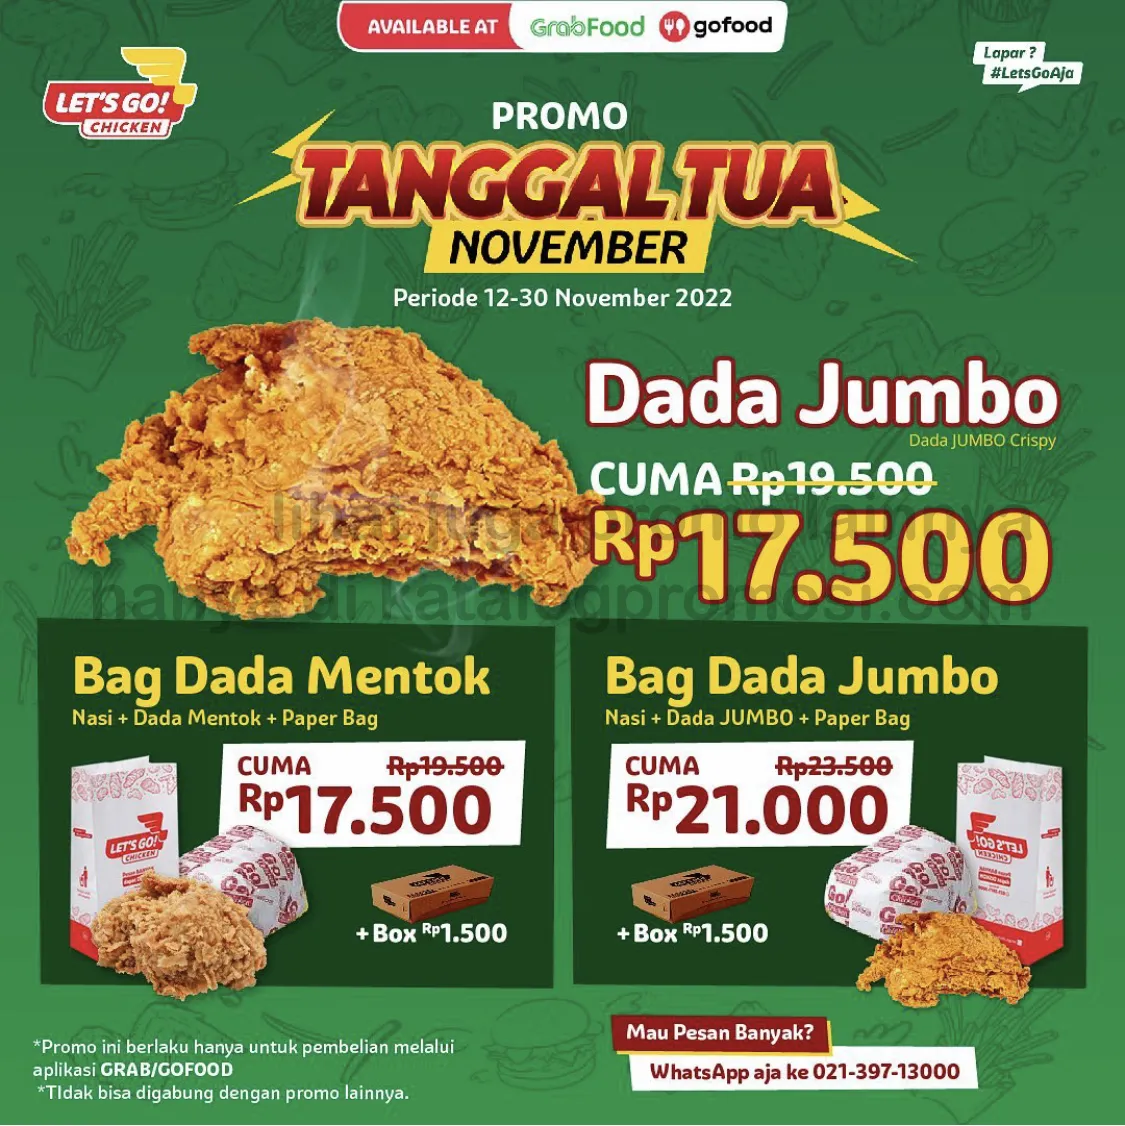 Promo LET'S GO CHICKEN TANGGAL TUA NOVEMBER khusus pemesanan via GRABFOOD & GOFOOD